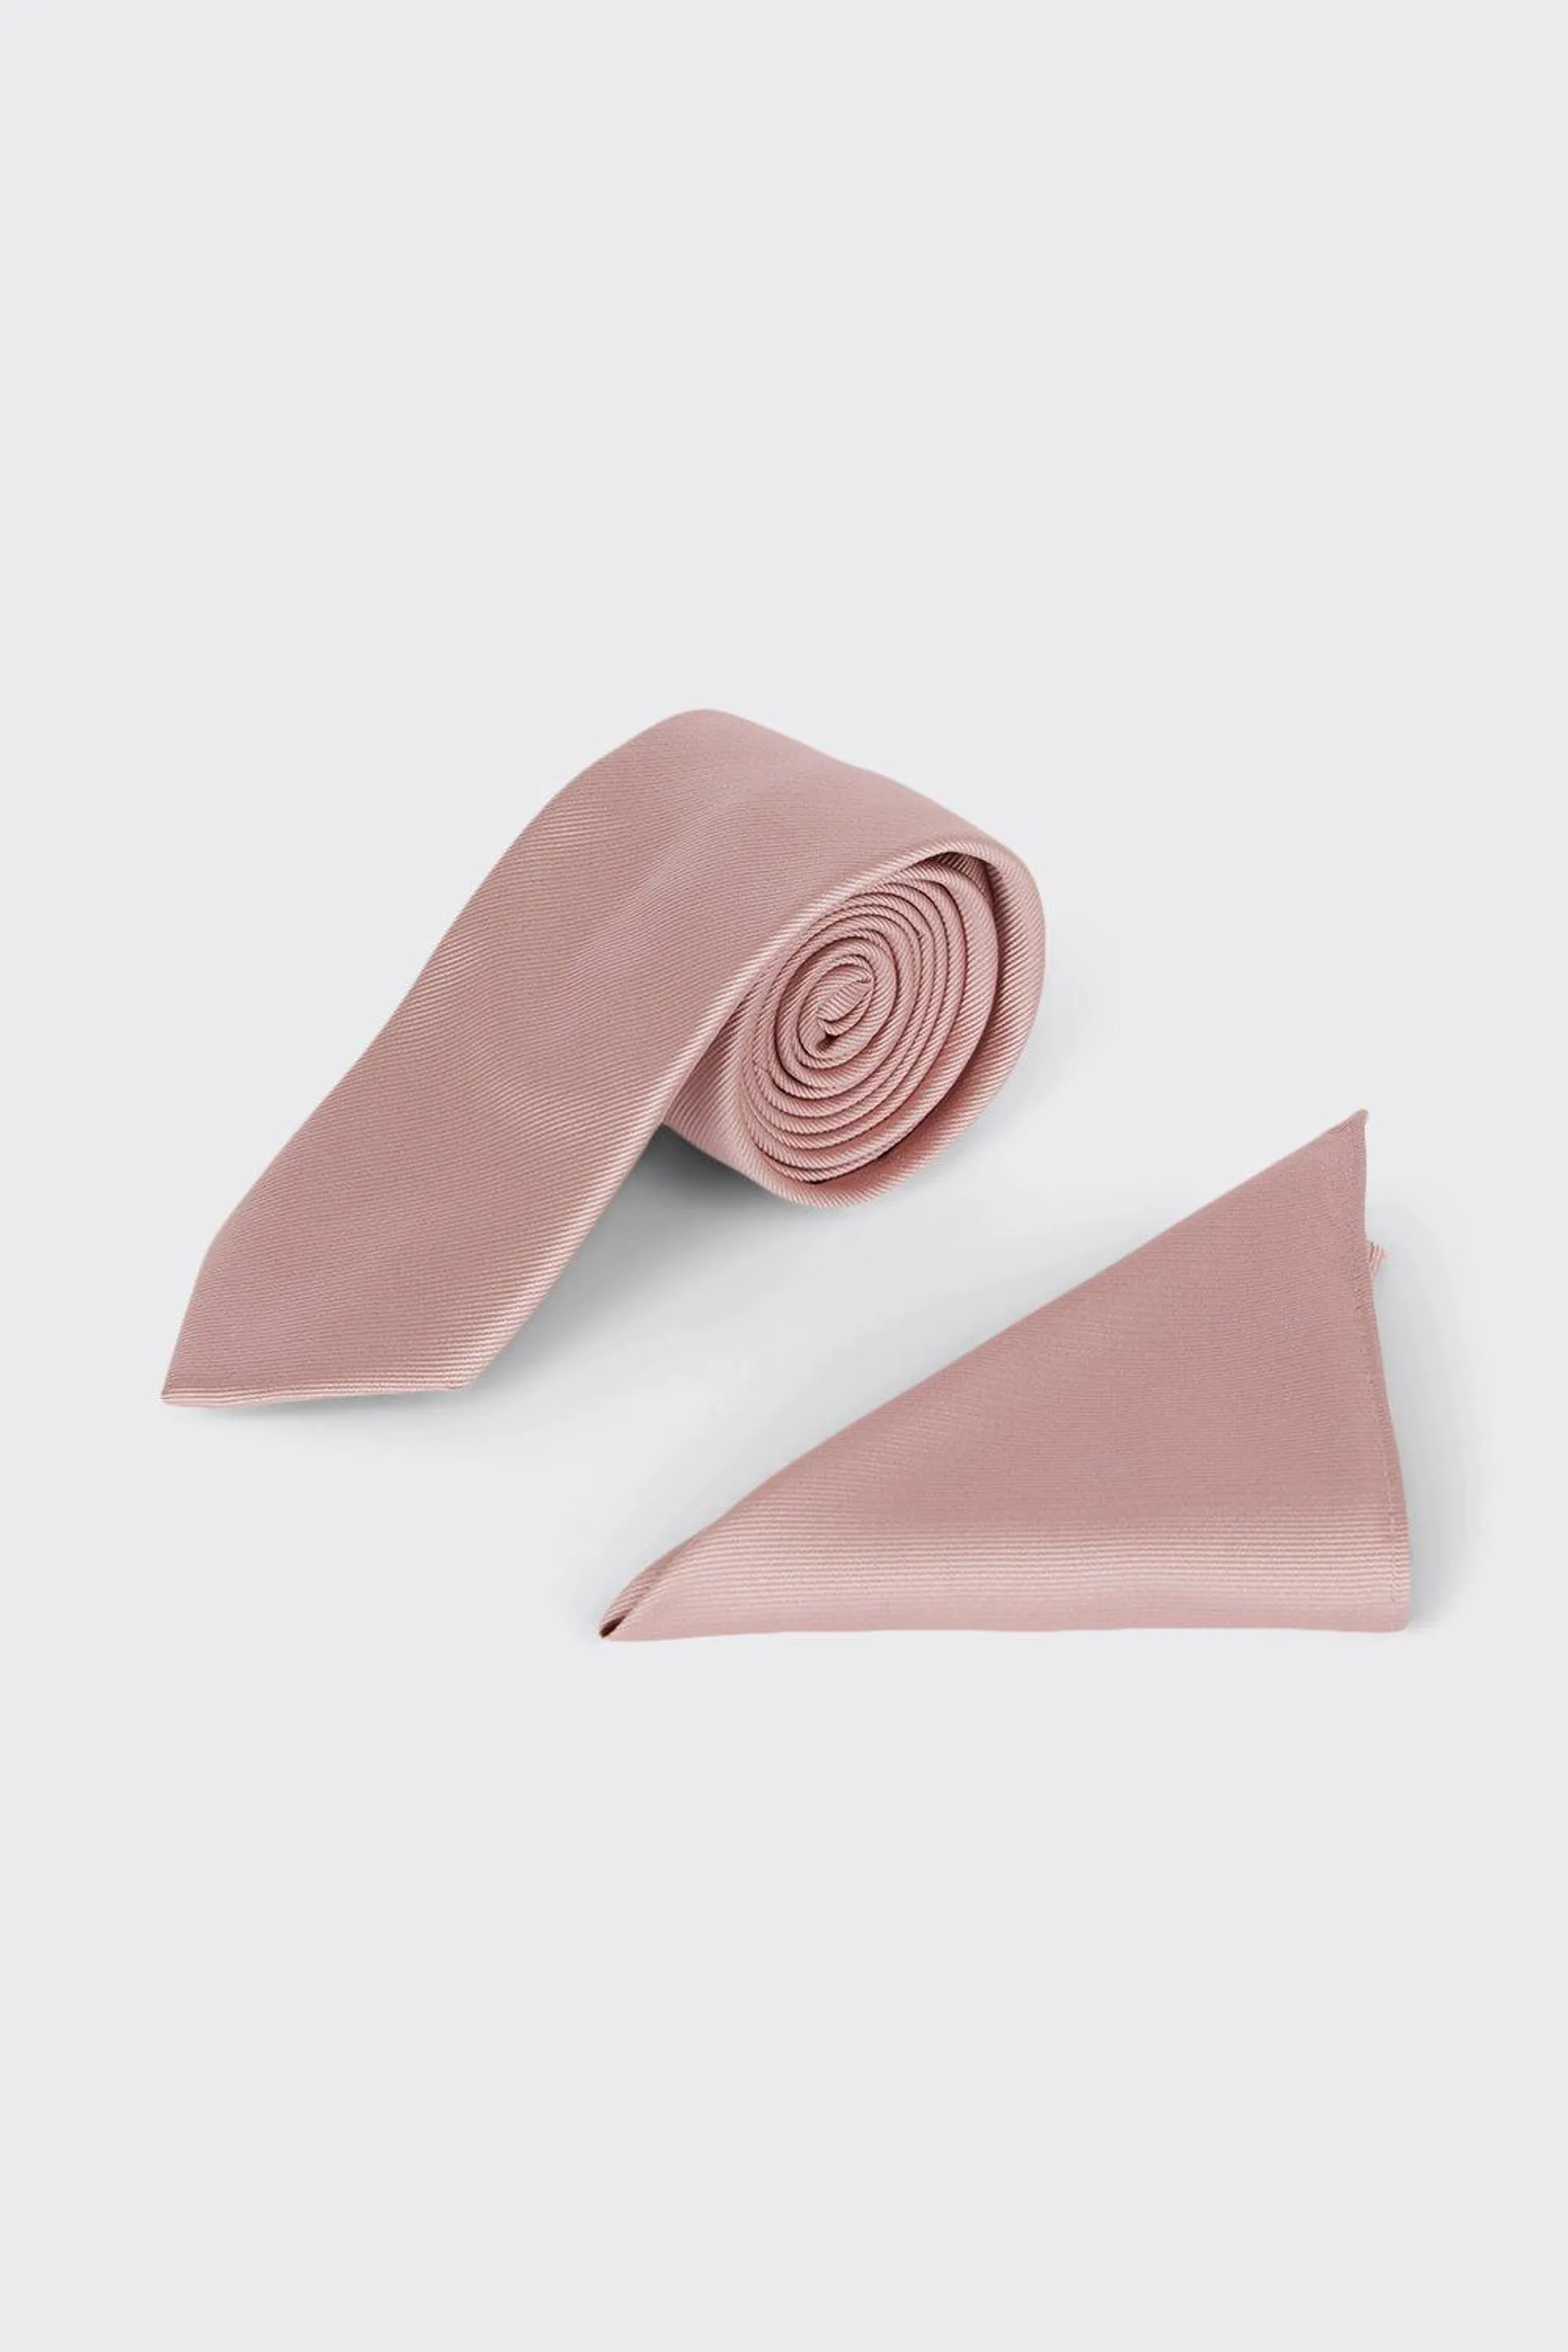 Longer Length Slim Rose Pink Tie And Pocket Square Set